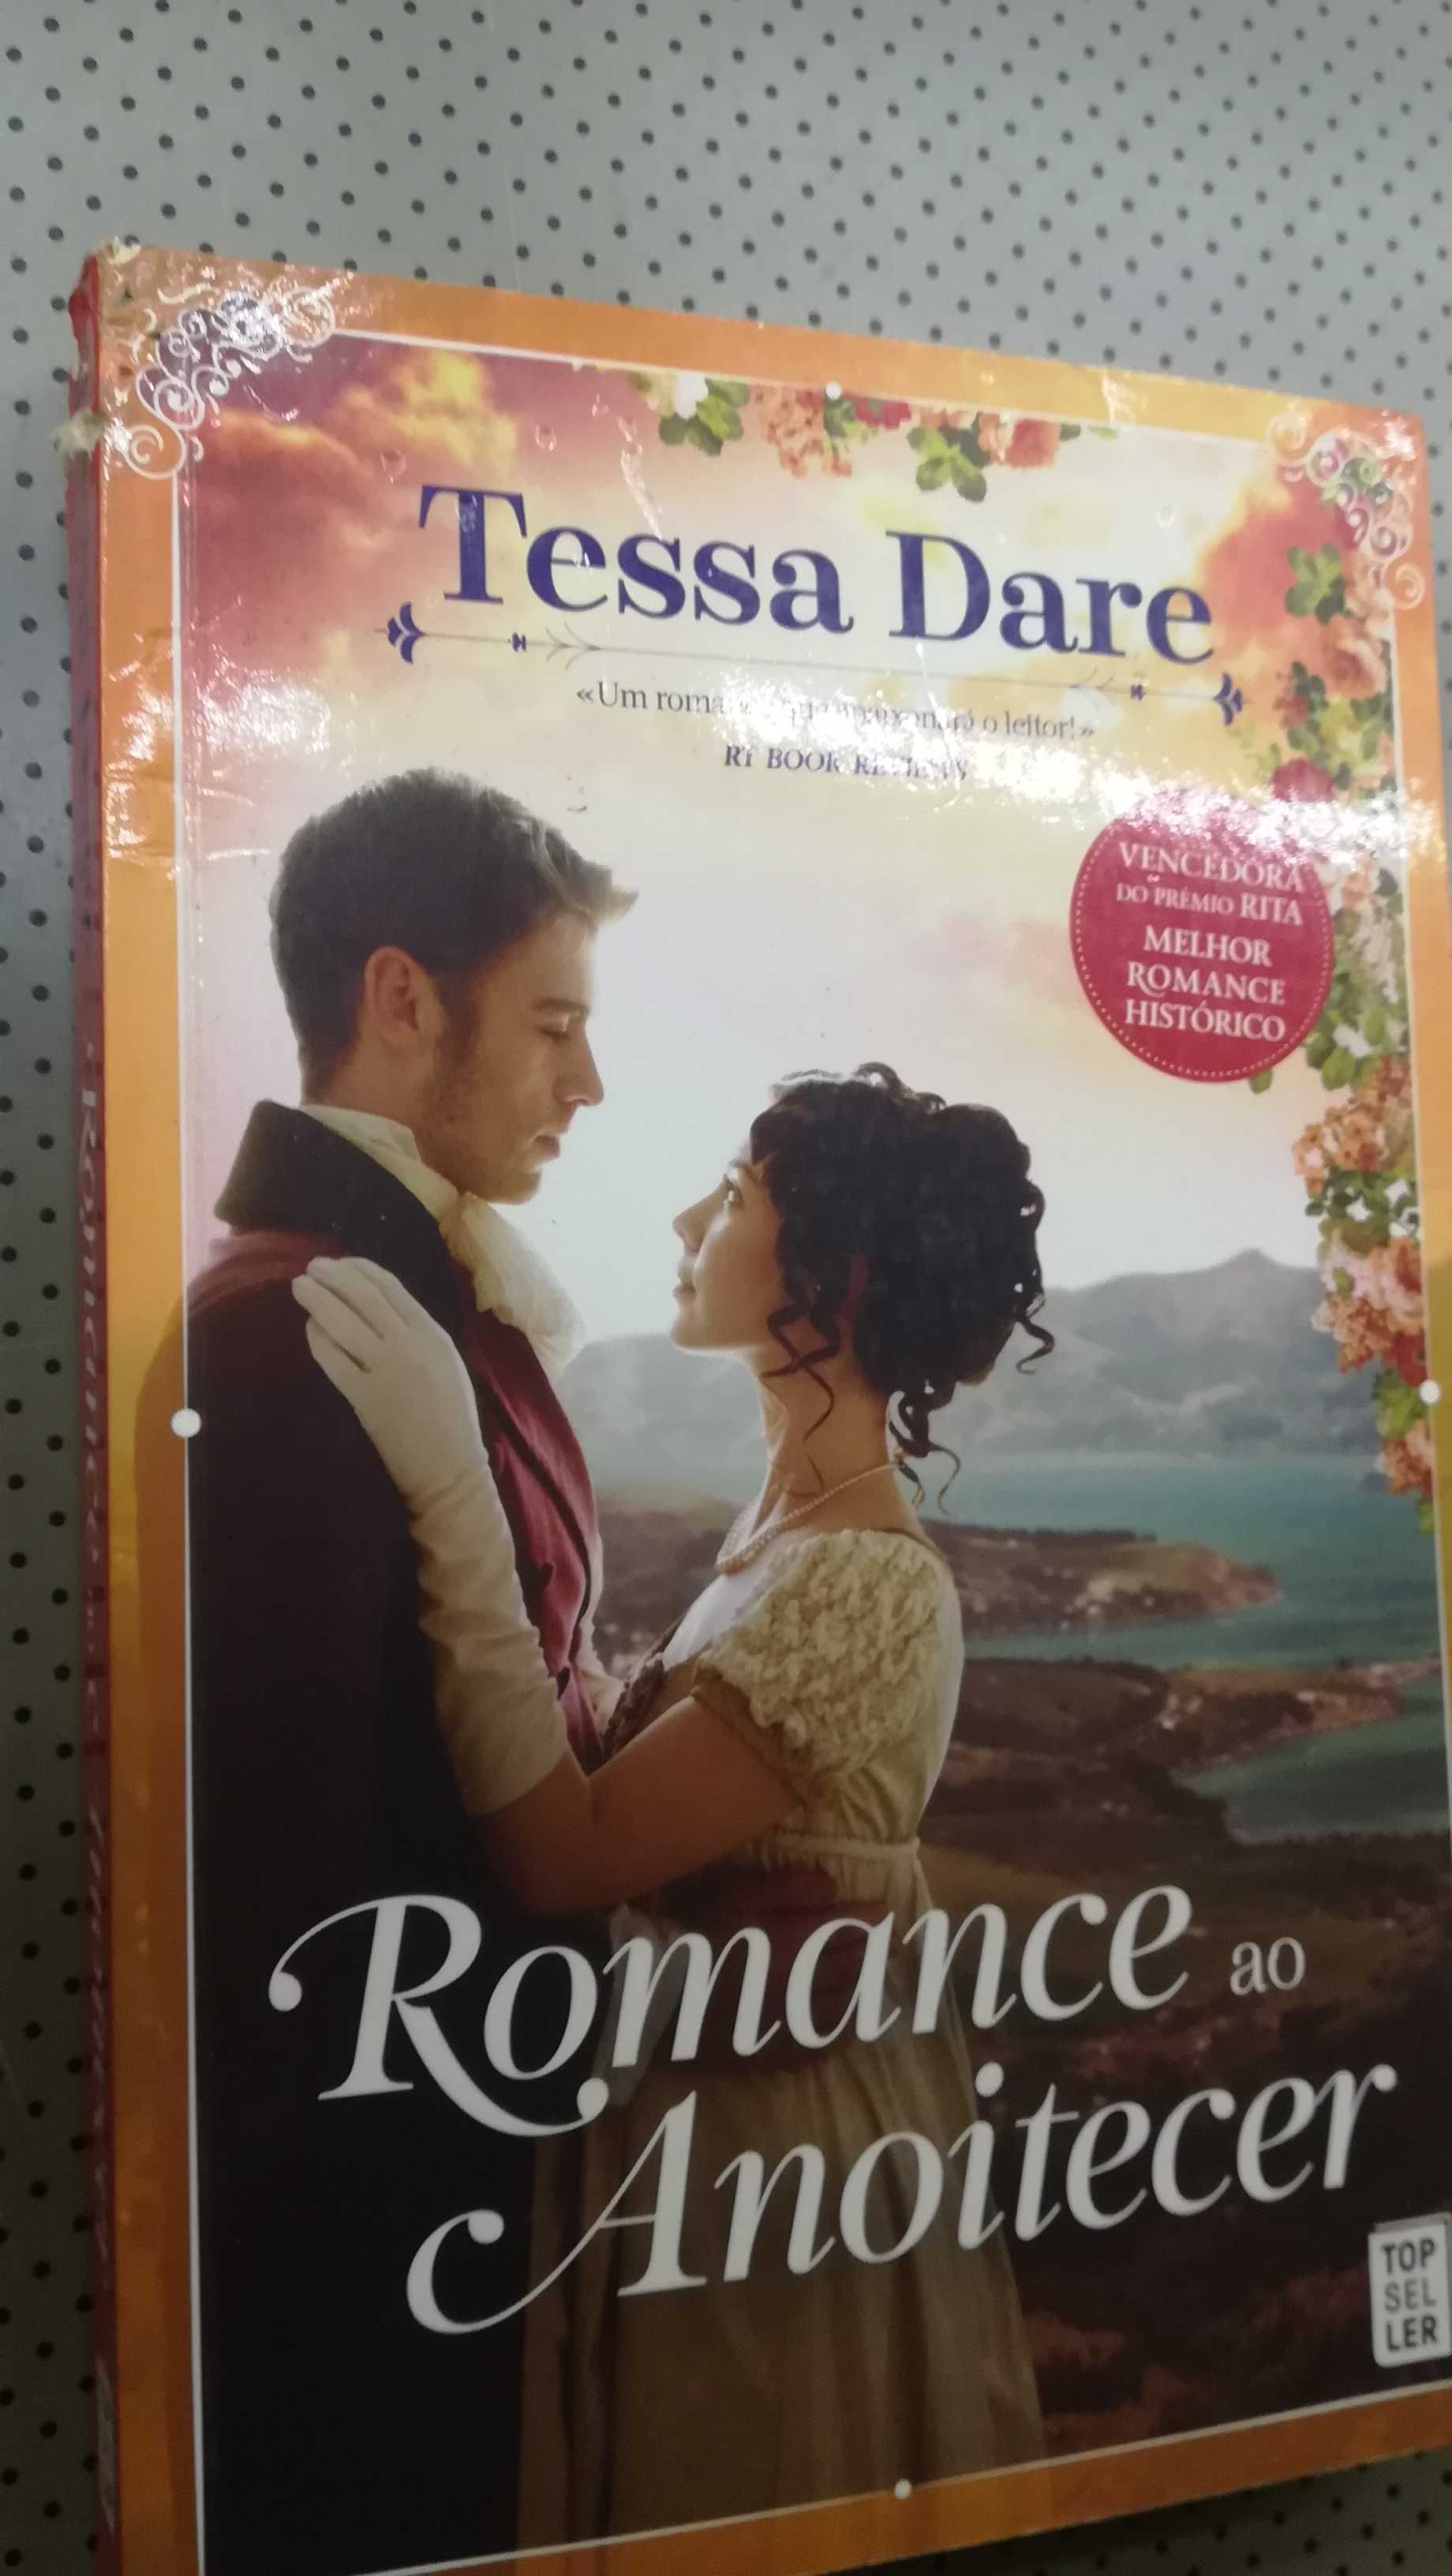 Tessa Dare - Romance ao anoitecer